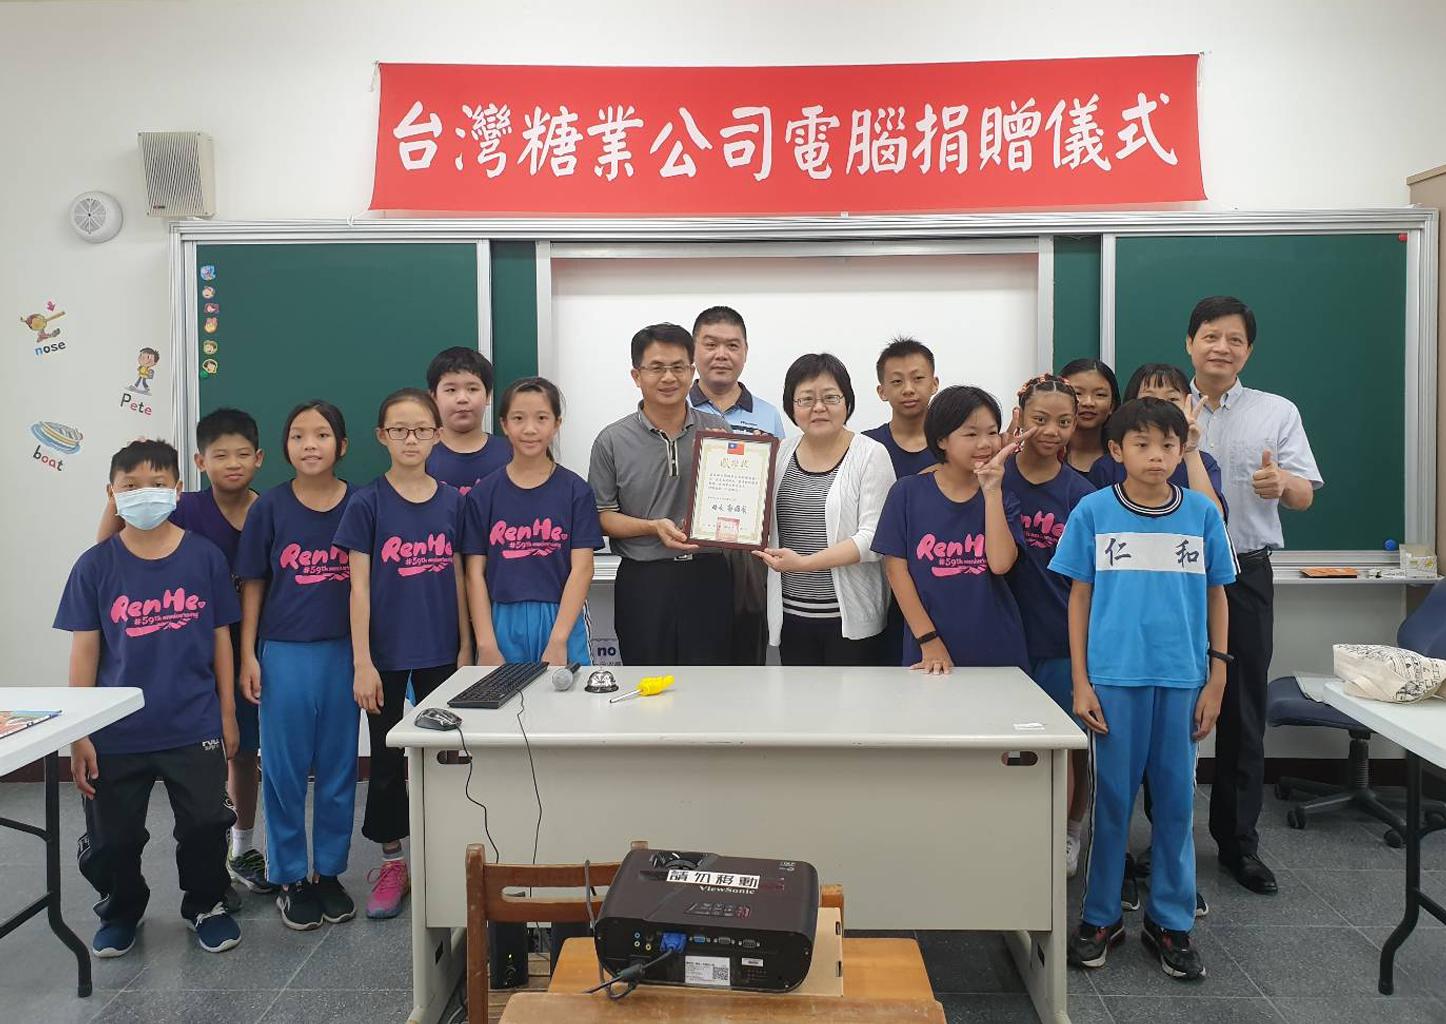 台糖將32部舊電腦妥善整理再生後，捐贈給鄰近總管理處的臺南市仁和國小，分享資源協助學校推廣數位教學課程。